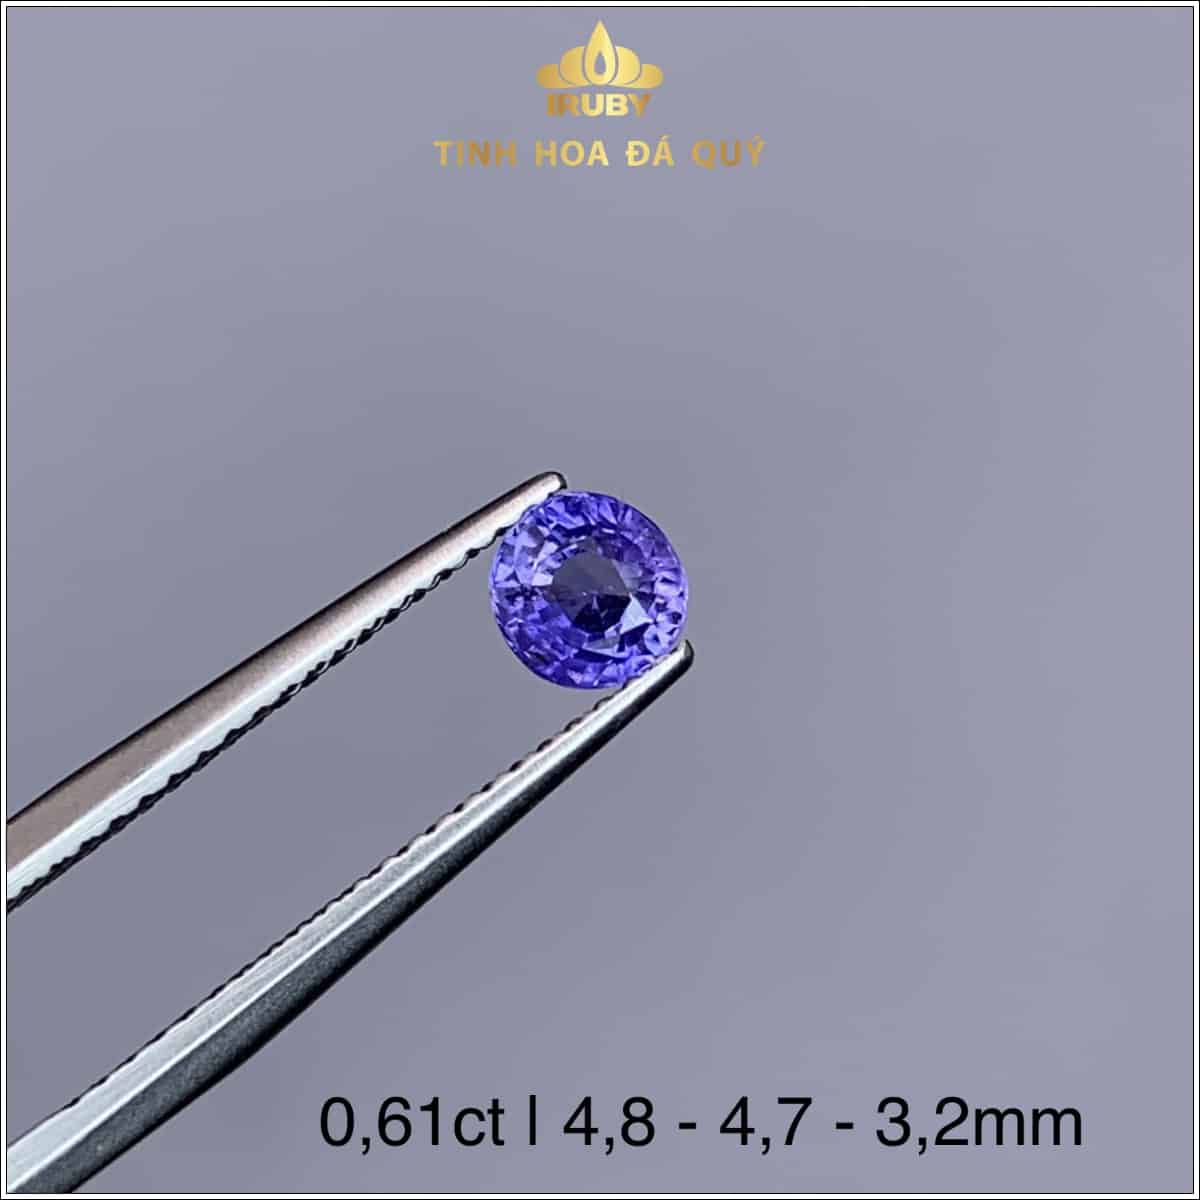 Viên Sapphire màu xanh lam hoàng gia 0,61ct - IRSP 234061 hình ảnh